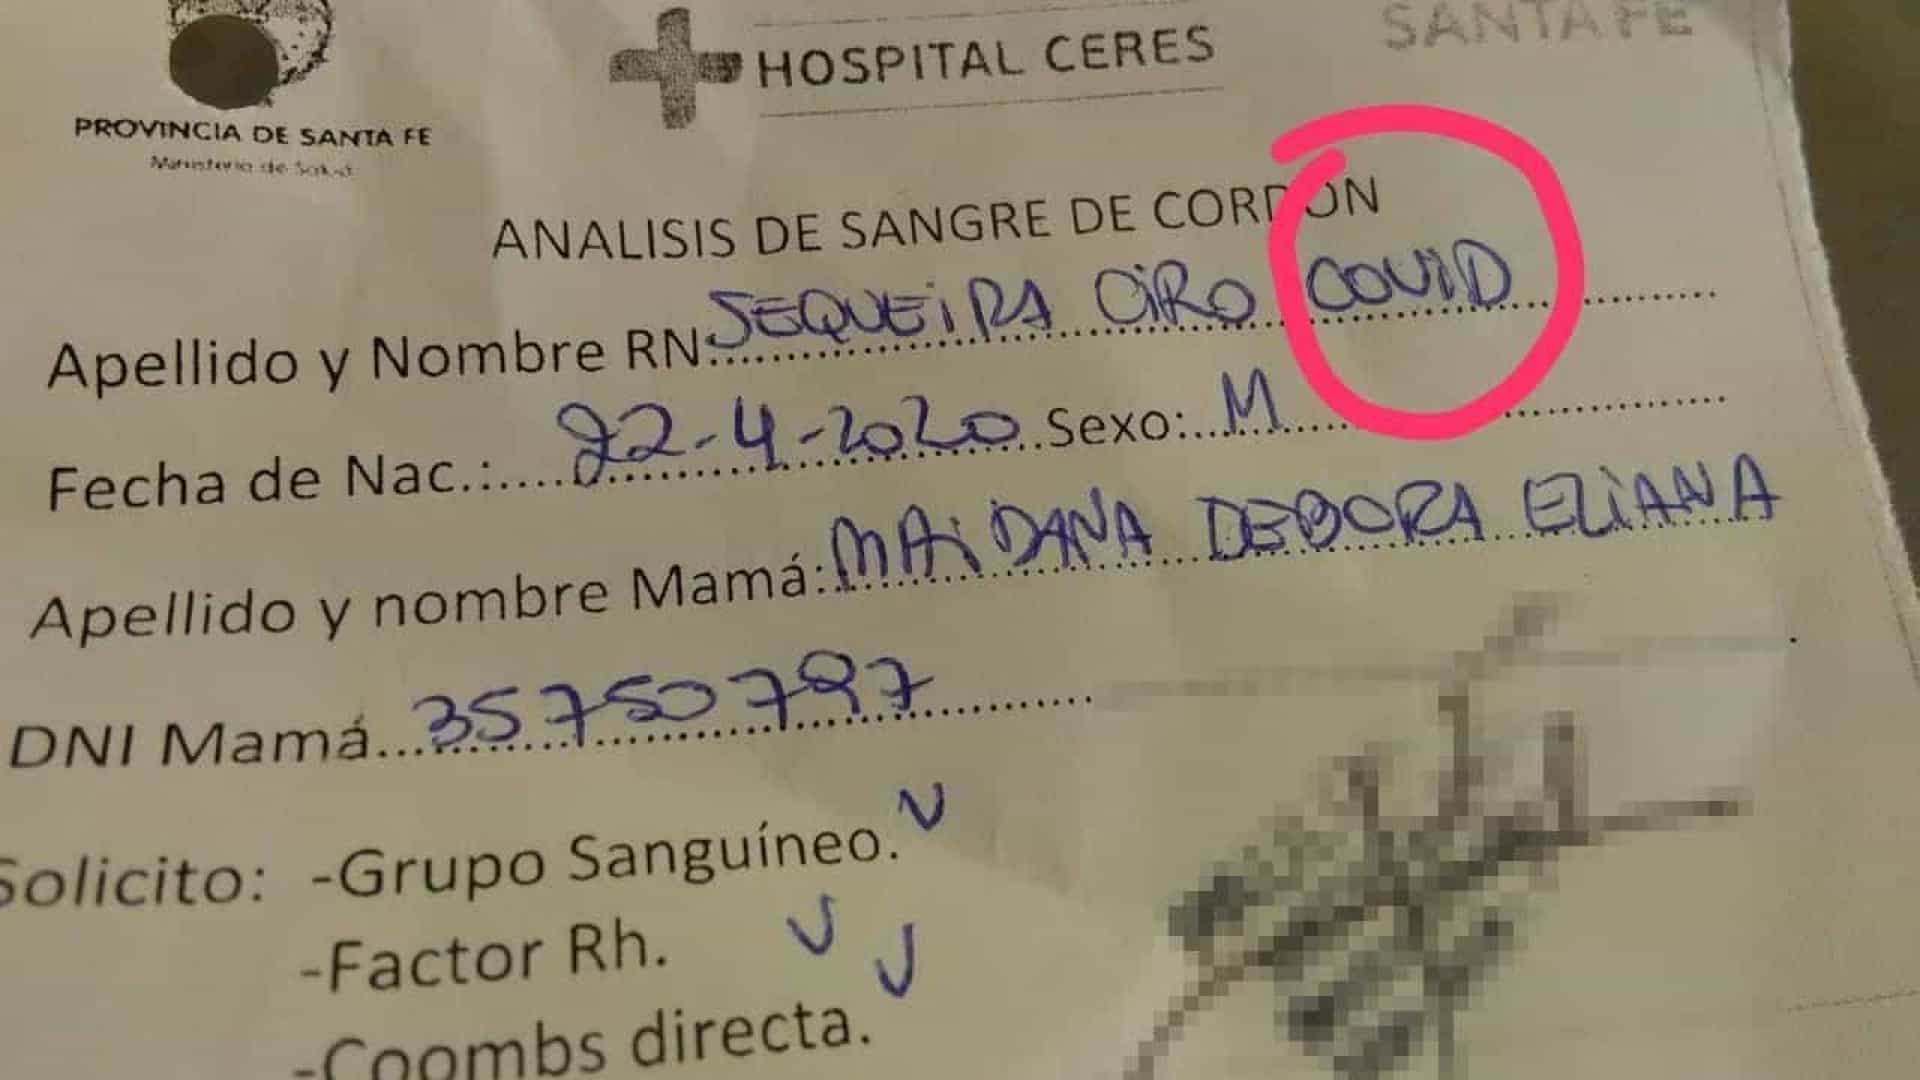 Insólito: bebé registado em Espanha com nome de pandemia